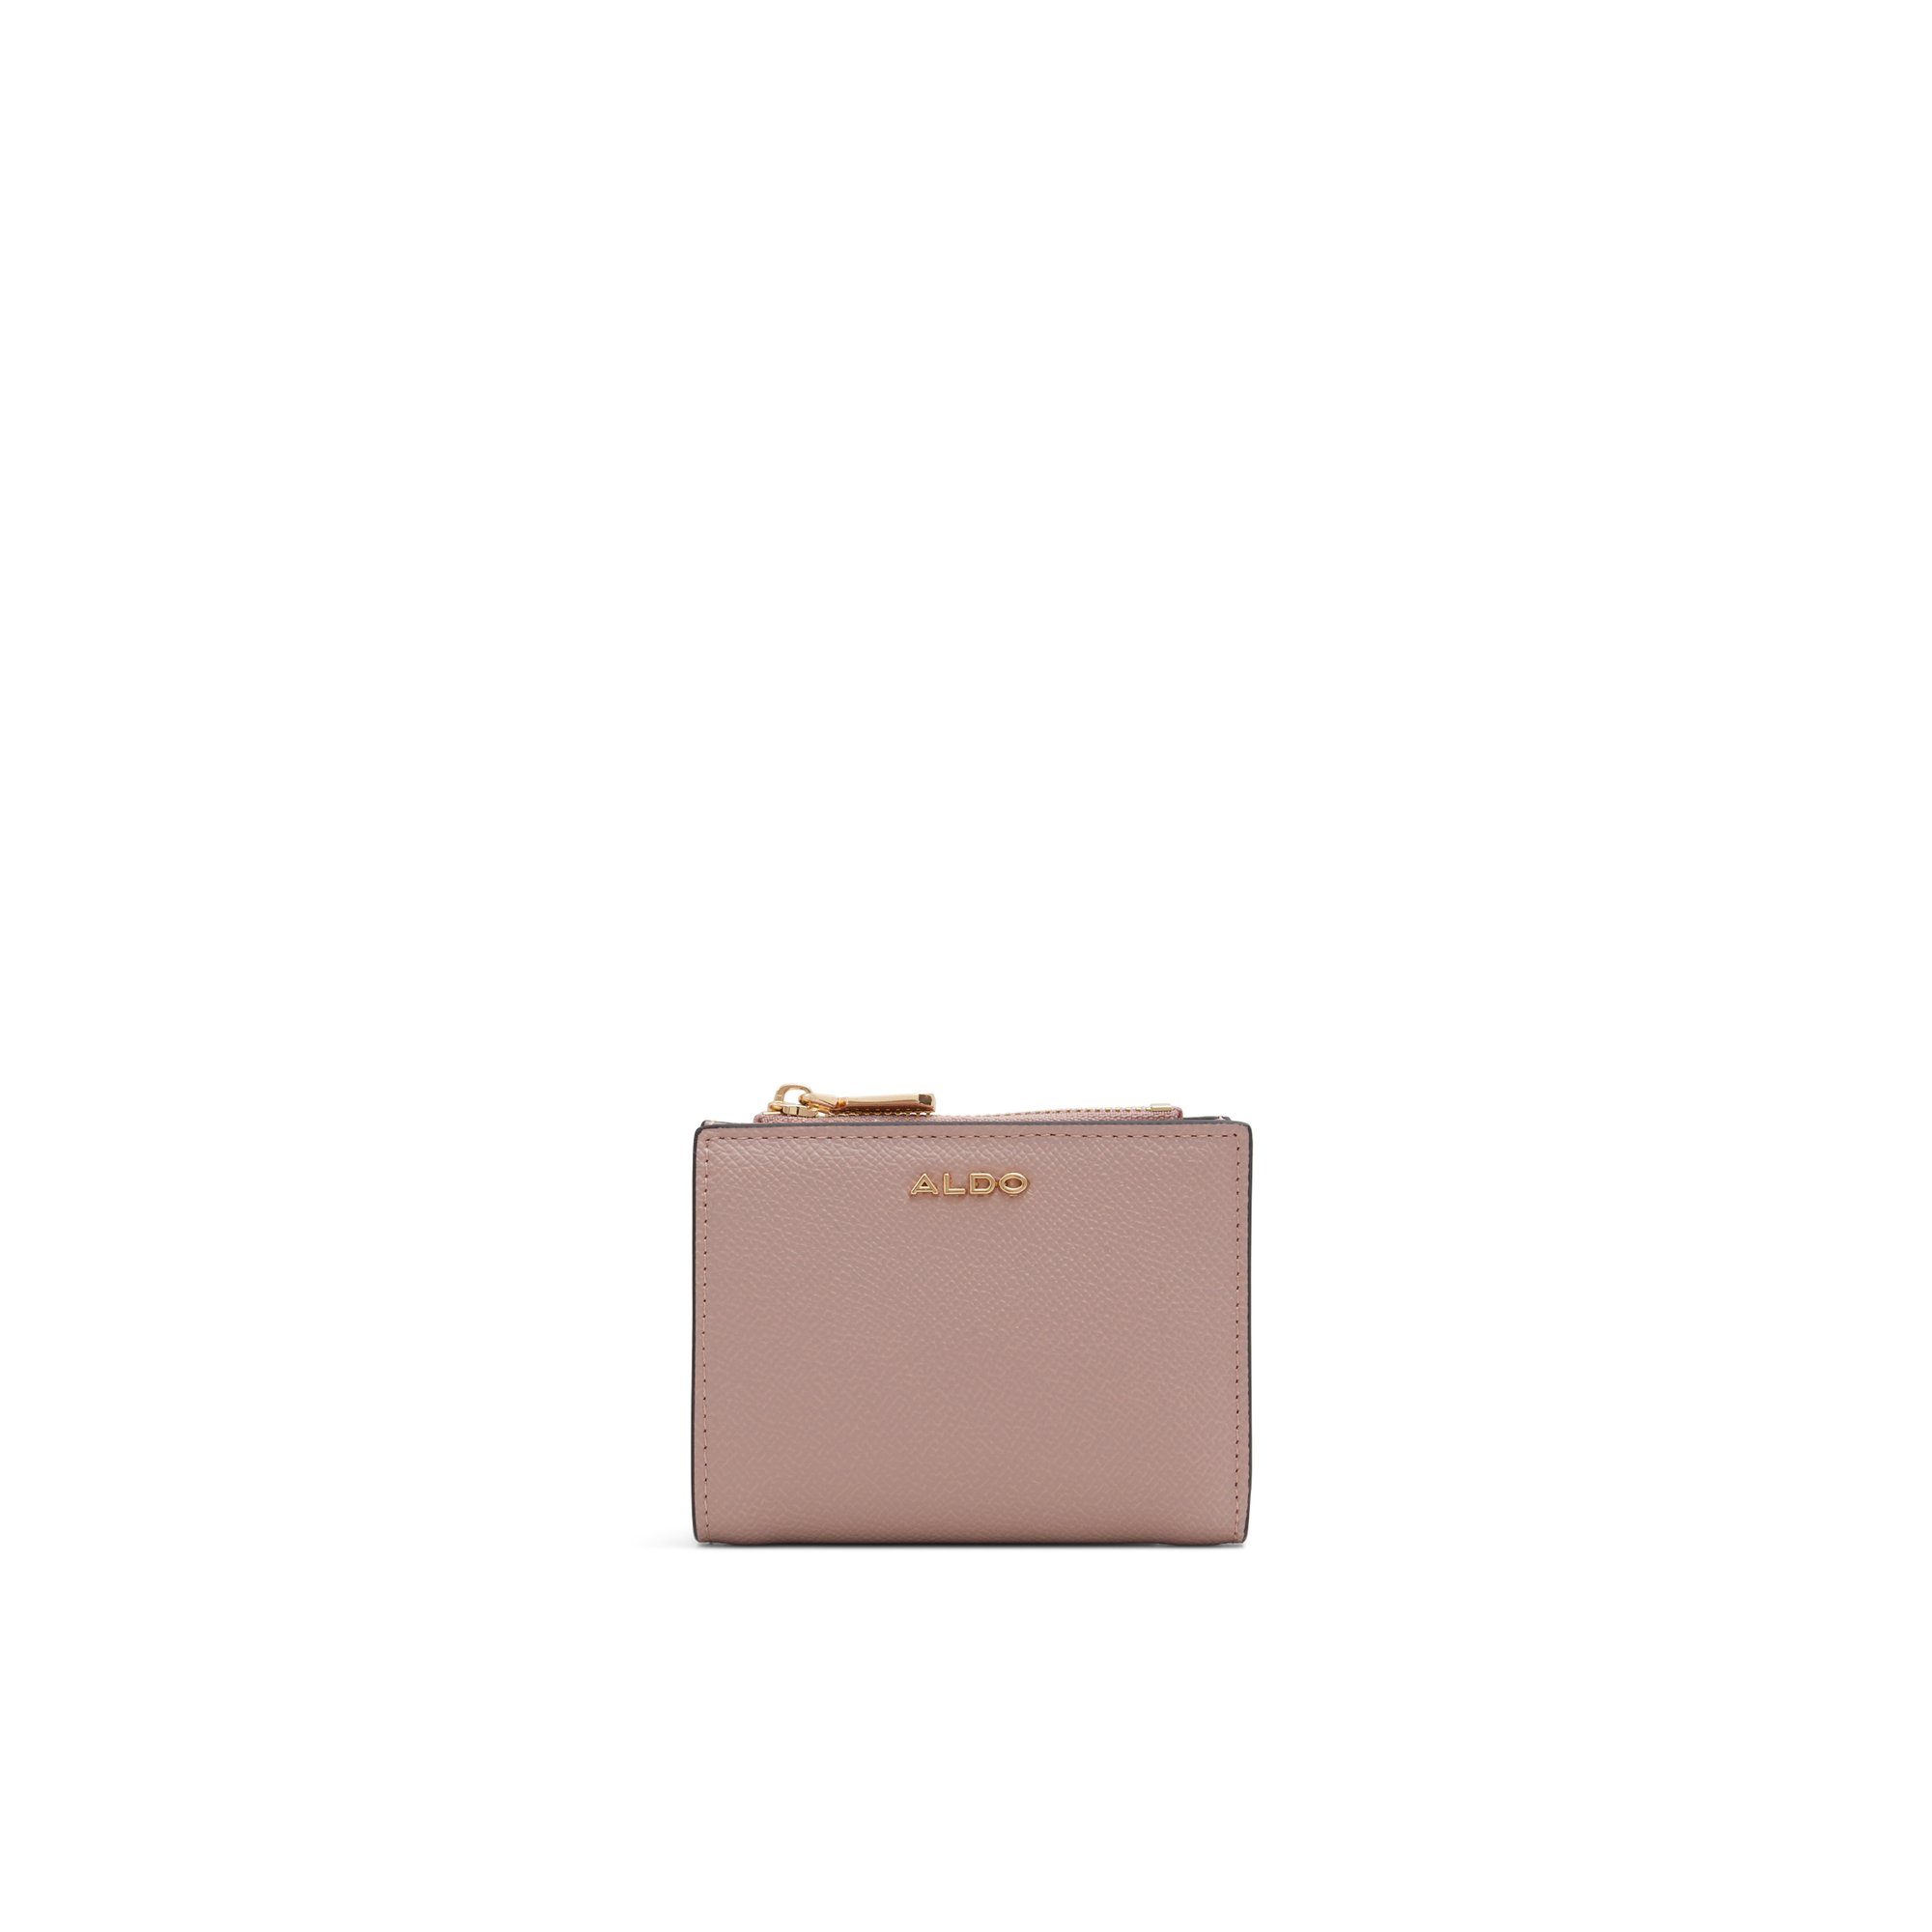 ALDO Vervene - Women's Wallet Handbag - Pink